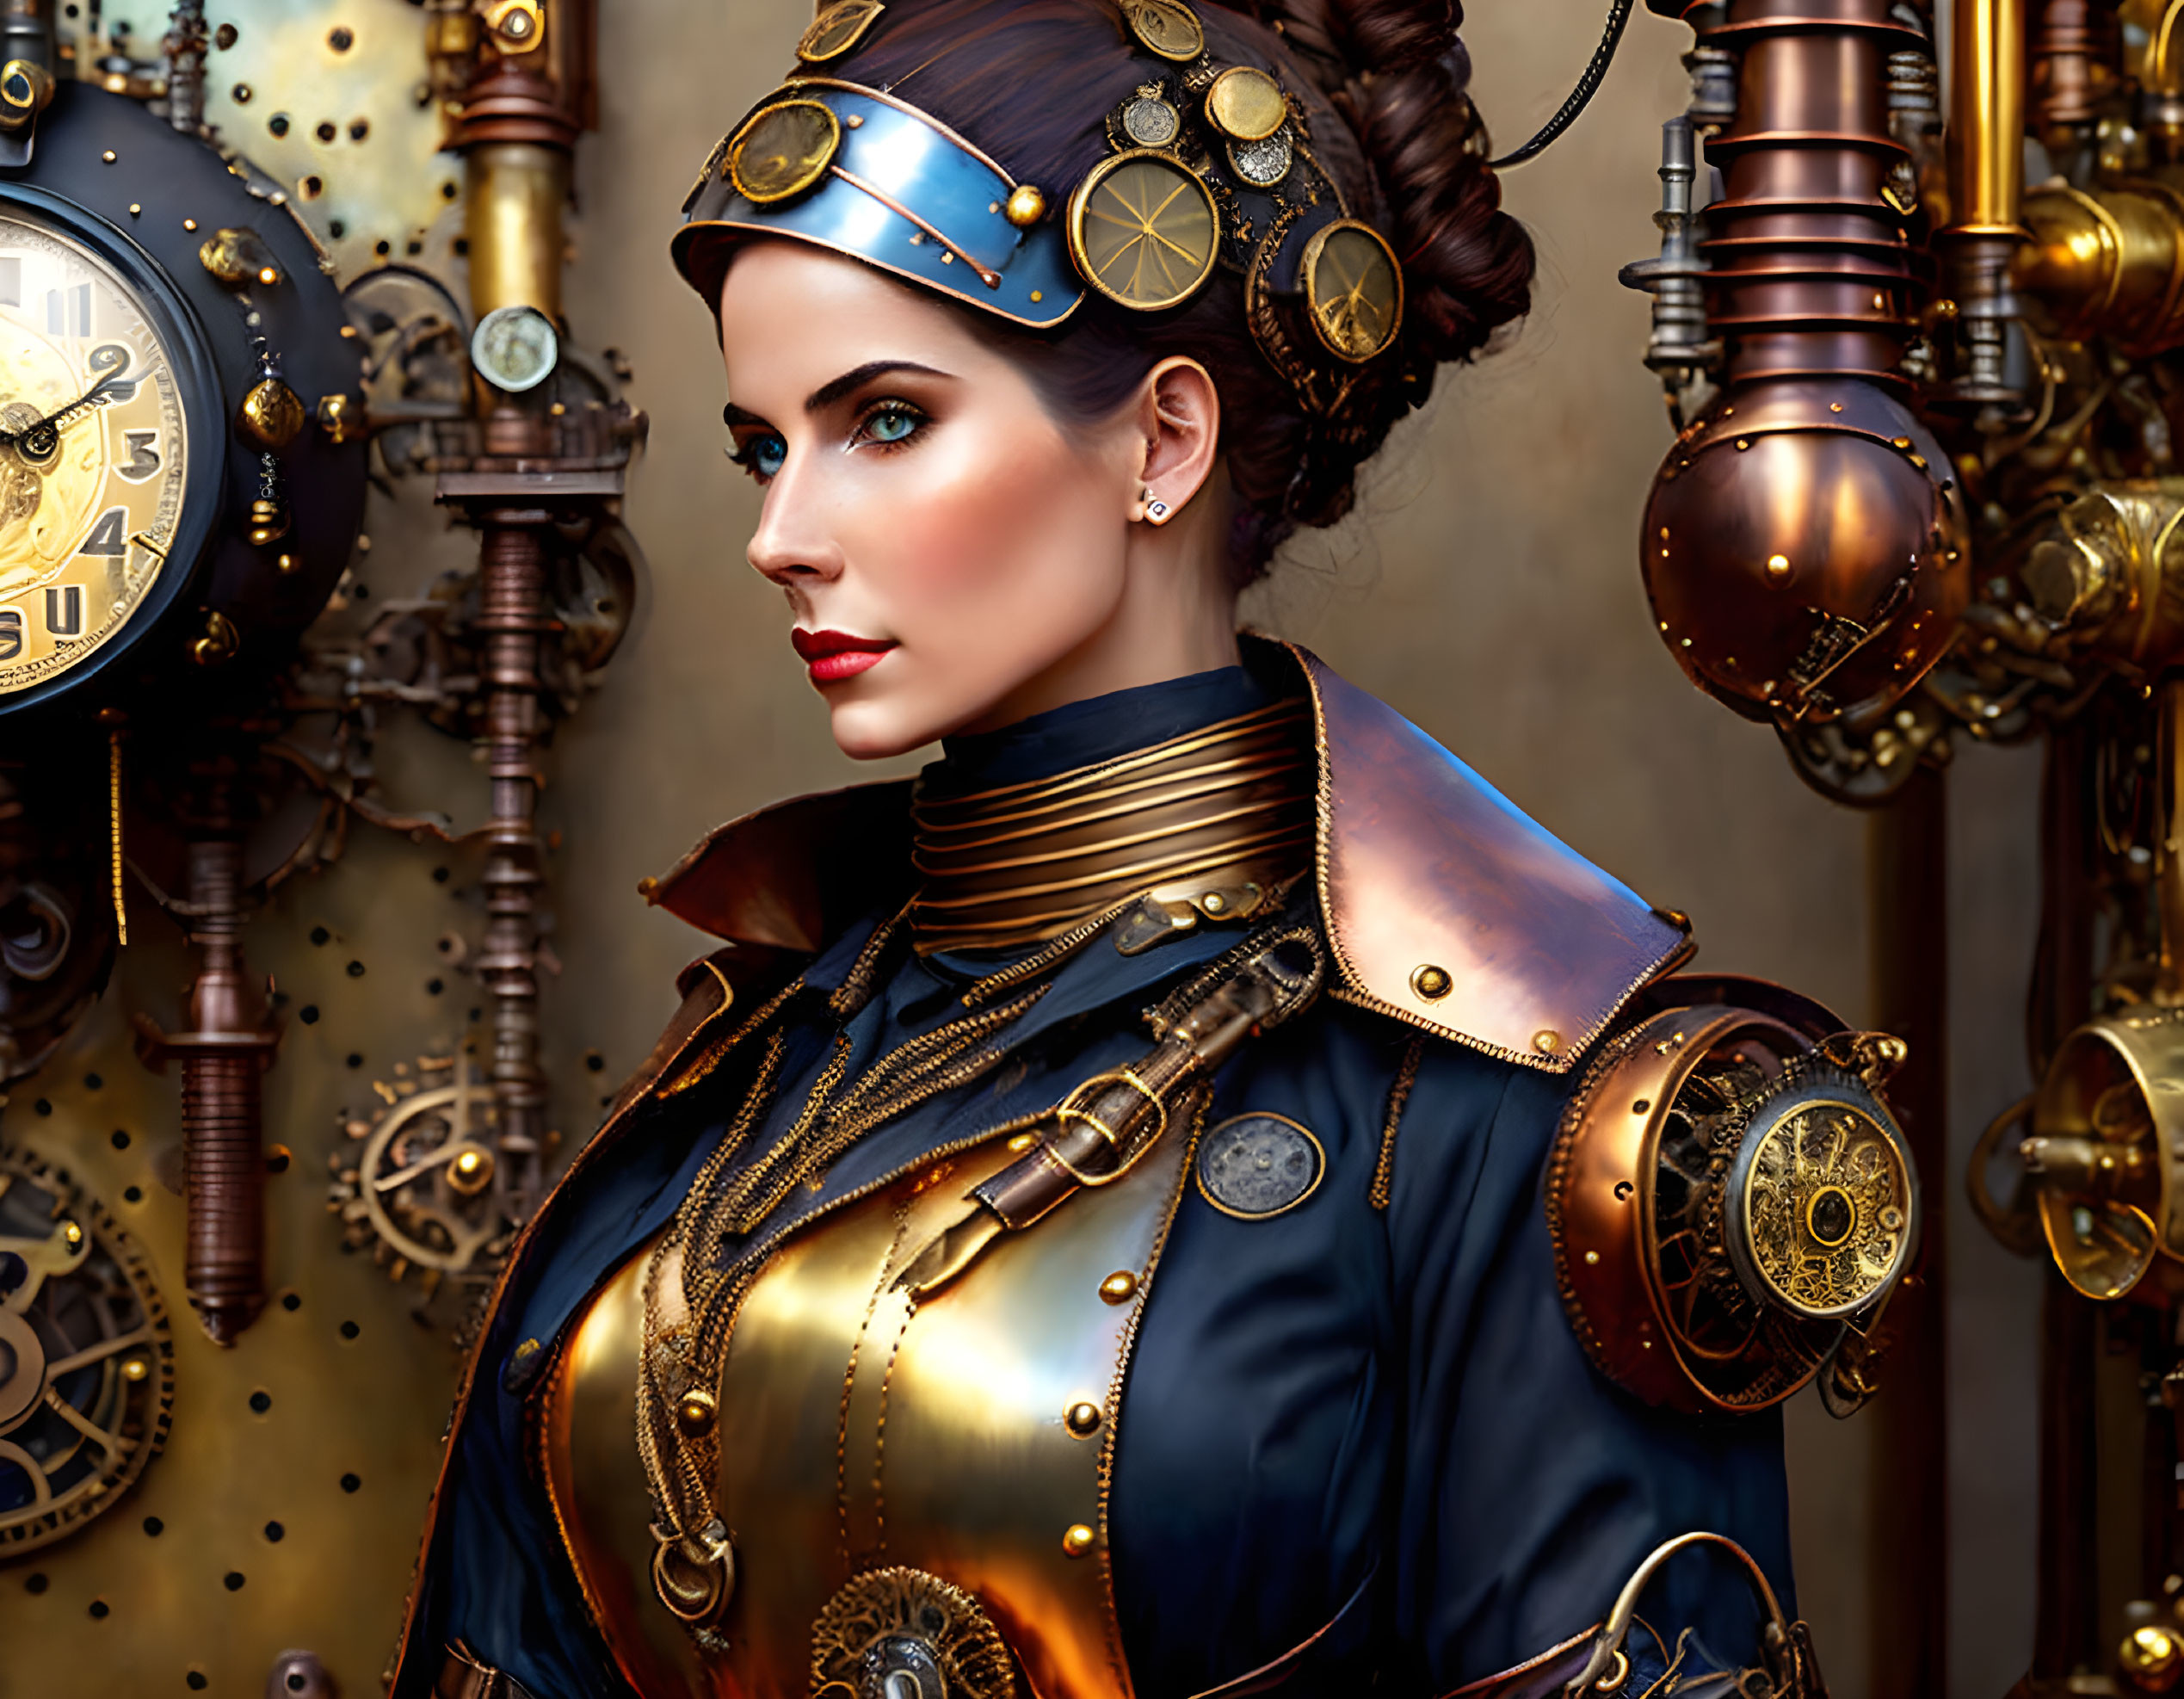 Beautiful Steampunk woman